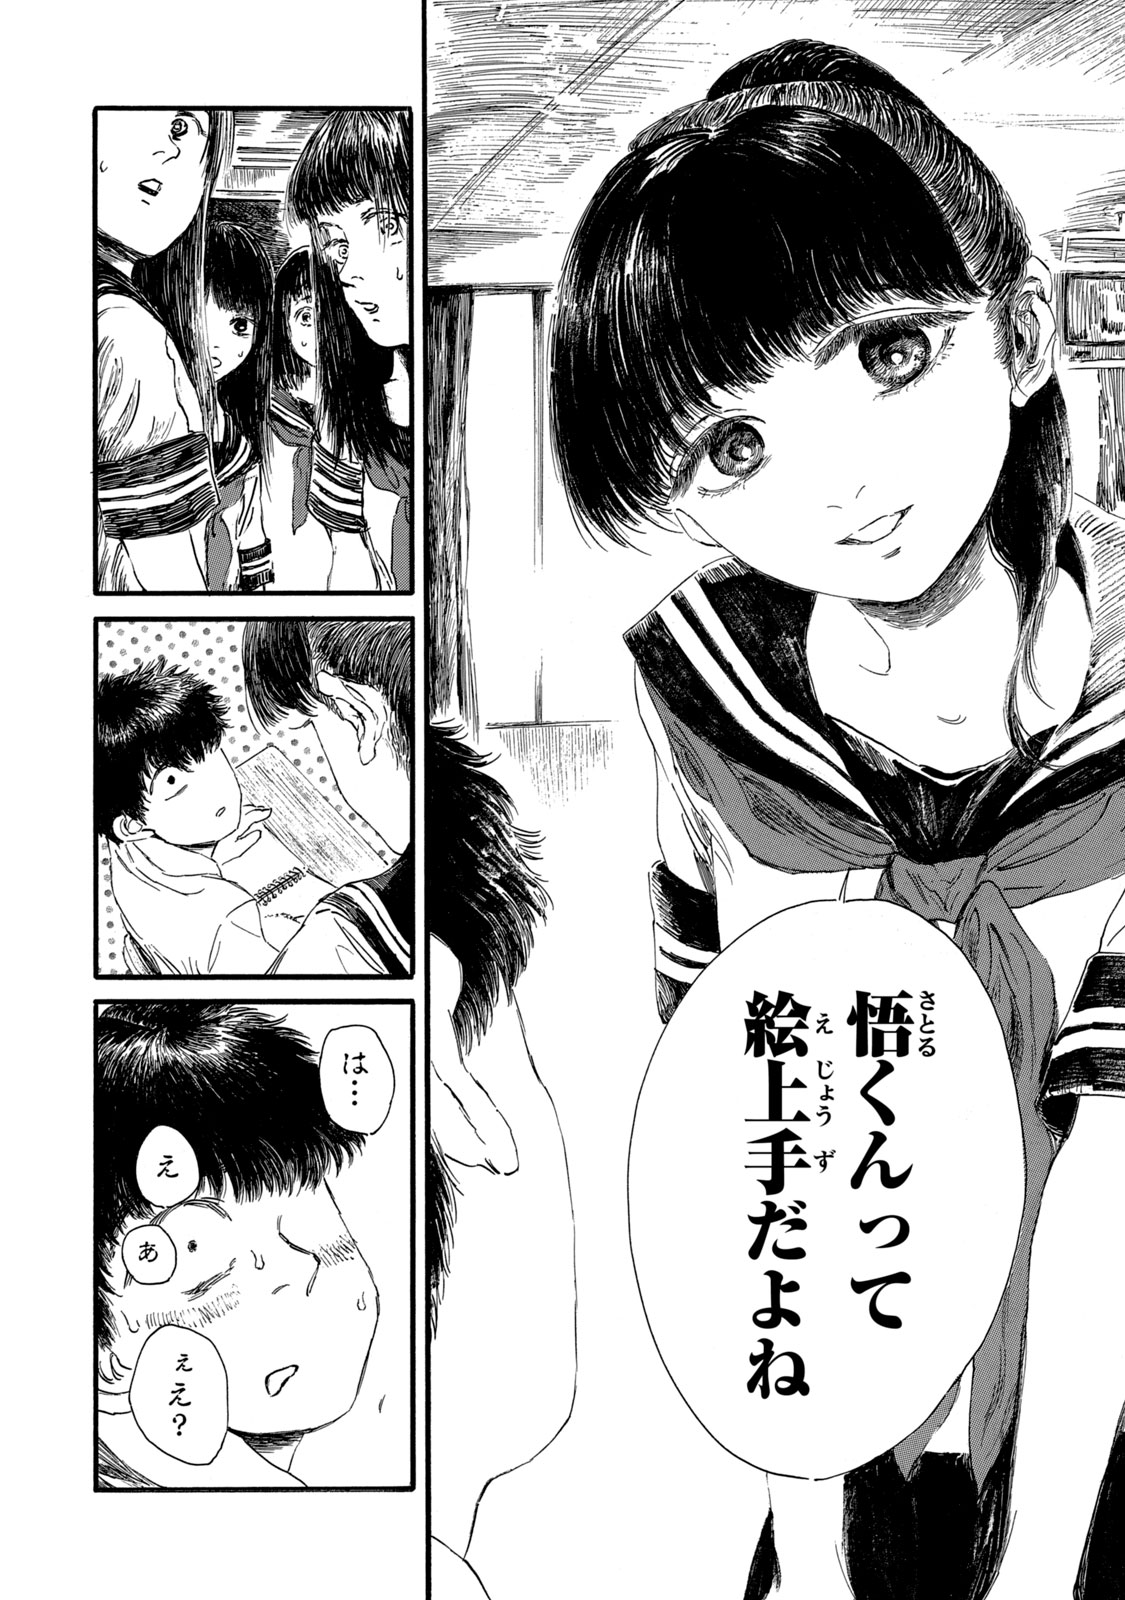 Watashi no Hara no Naka no Bakemono - Chapter 6 - Page 16